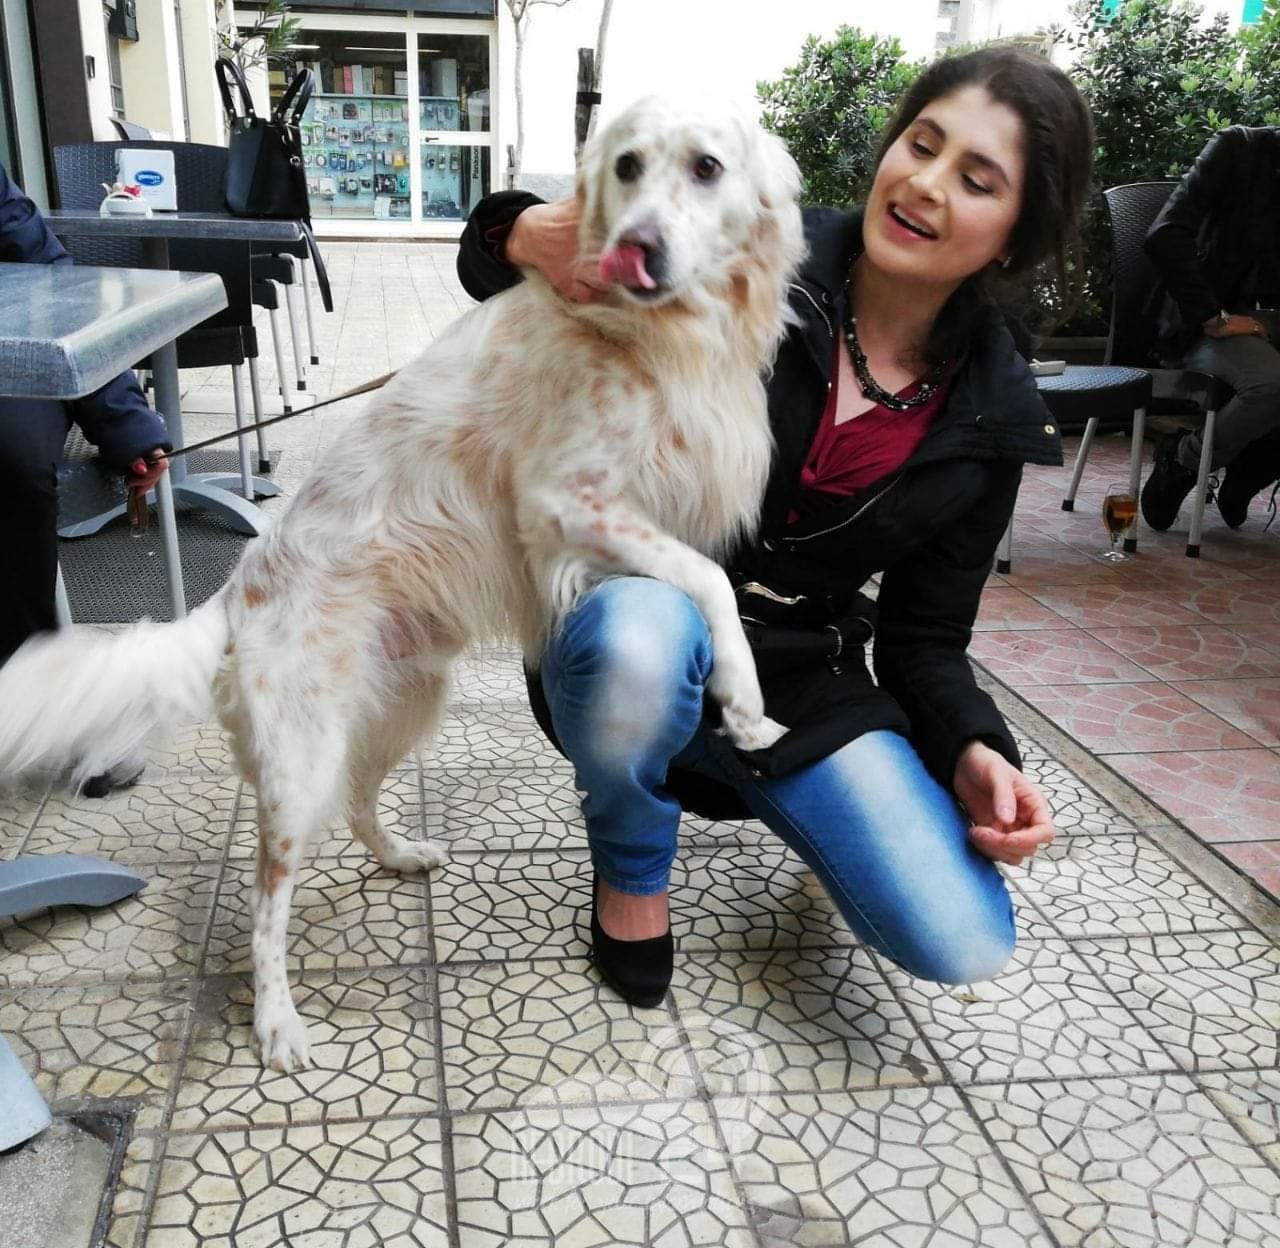 Messina – Papiro M5S: “avvelenamenti e uccisioni di cani e gatti, atti criminosi e vigliacchi”